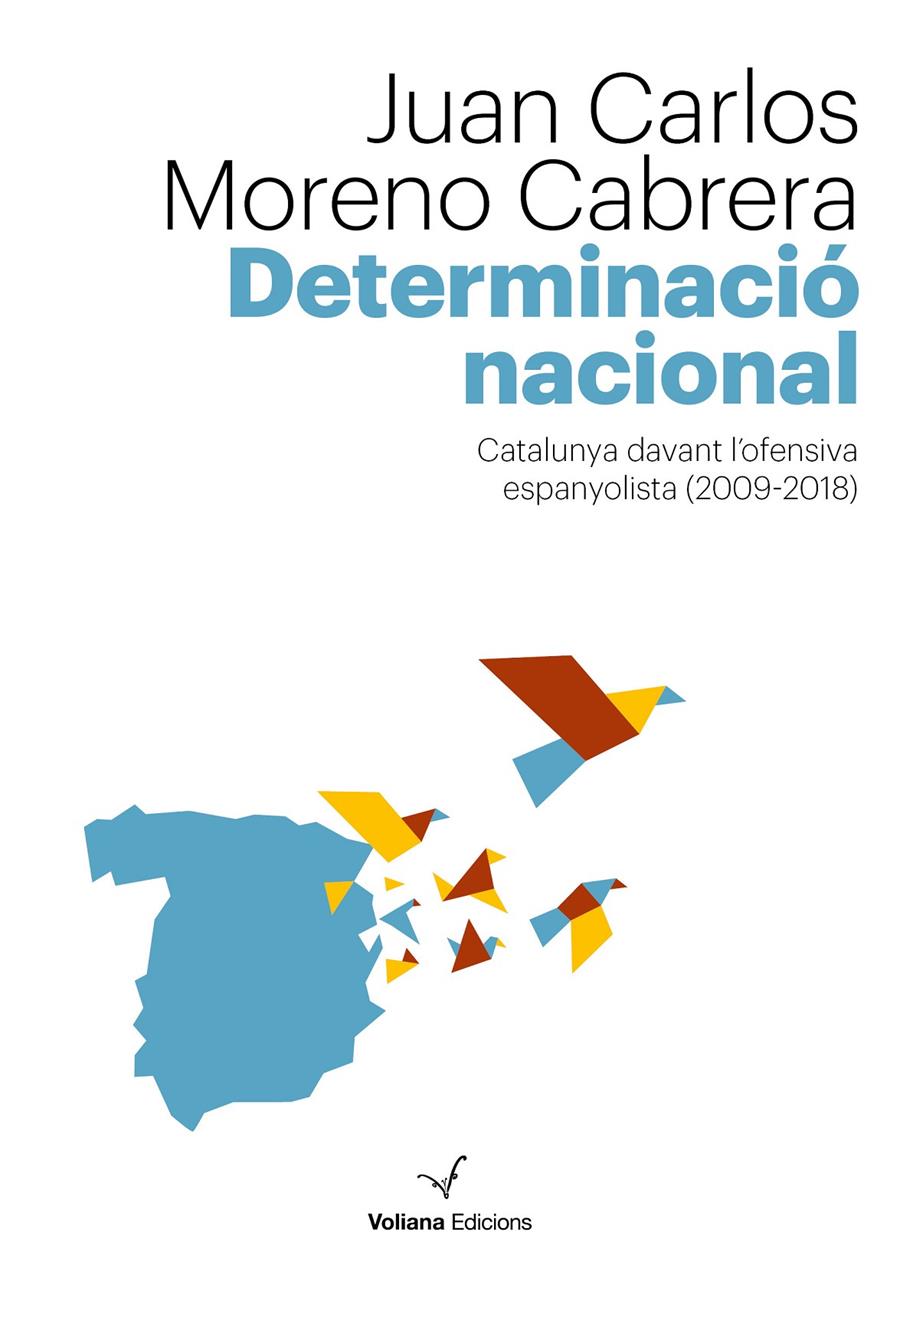 Determinació nacional | Moreno Cabrera, Juan Carlos | Cooperativa autogestionària